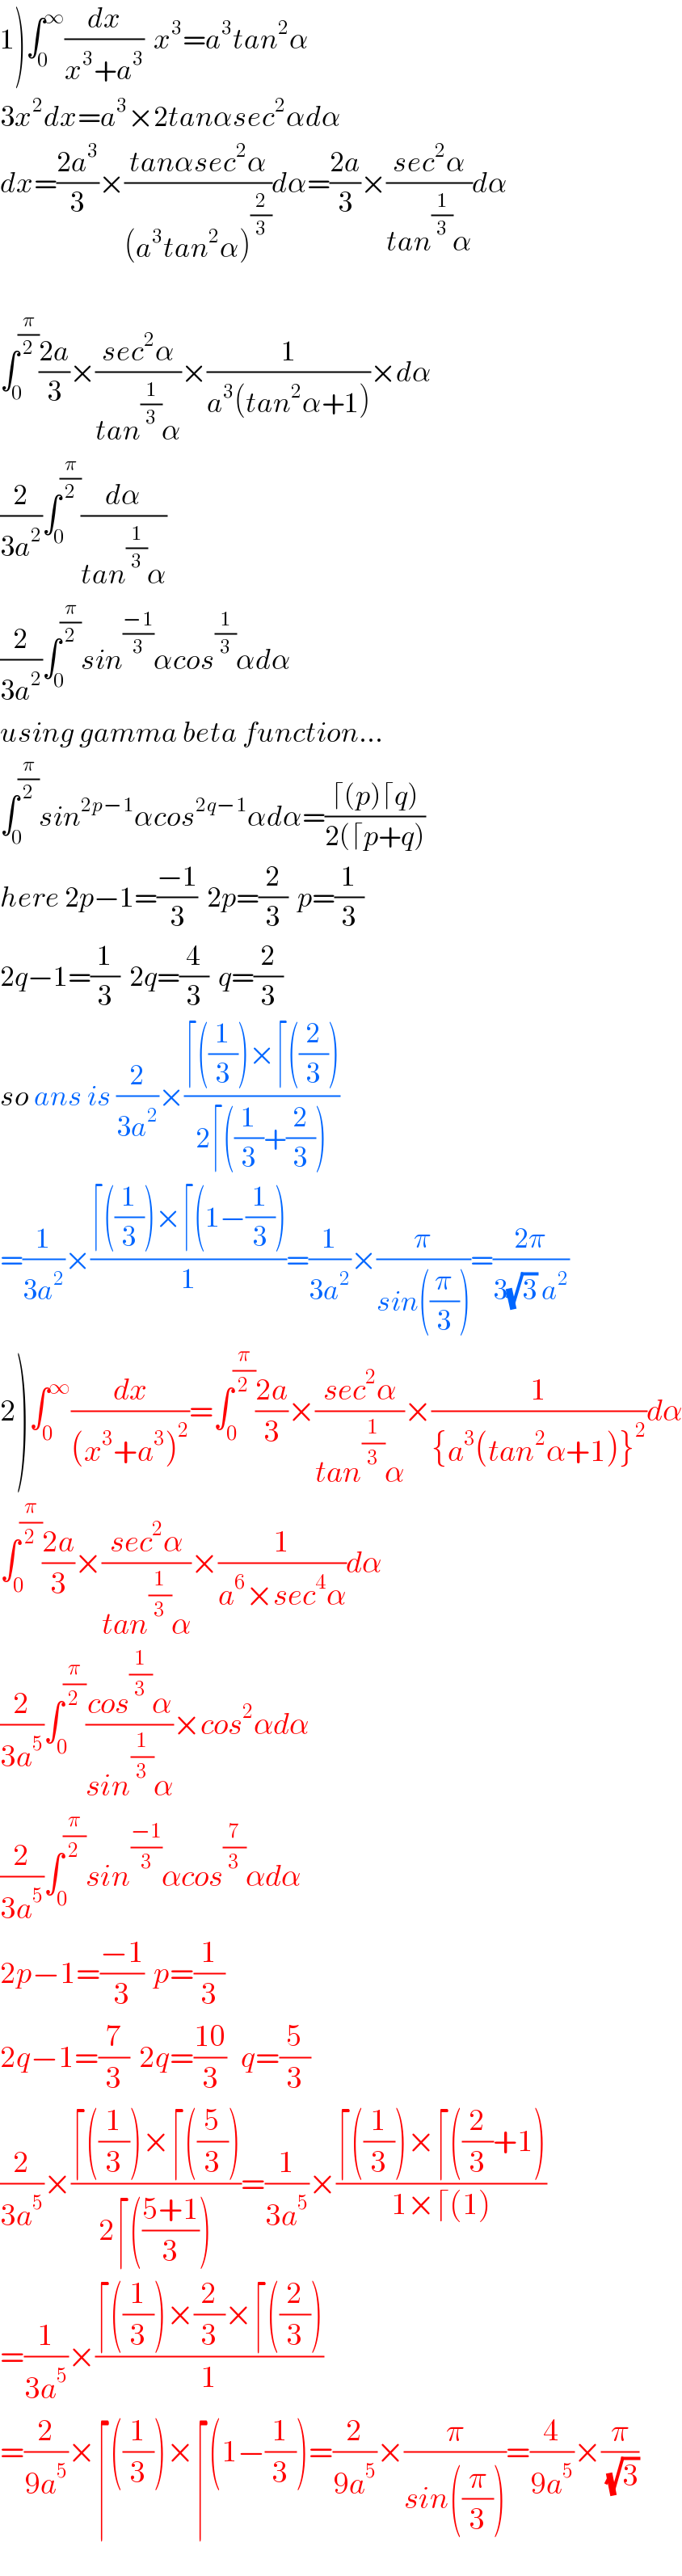 1)∫_0 ^∞ (dx/(x^3 +a^3 ))  x^3 =a^3 tan^2 α  3x^2 dx=a^3 ×2tanαsec^2 αdα  dx=((2a^3 )/3)×((tanαsec^2 α)/((a^3 tan^2 α)^(2/3) ))dα=((2a)/3)×((sec^2 α)/(tan^(1/3) α))dα    ∫_0 ^(π/2) ((2a)/3)×((sec^2 α)/(tan^(1/3) α))×(1/(a^3 (tan^2 α+1)))×dα  (2/(3a^2 ))∫_0 ^(π/2) (dα/(tan^(1/3) α))  (2/(3a^2 ))∫_0 ^(π/2) sin^((−1)/3) αcos^(1/3) αdα  using gamma beta function...  ∫_0 ^(π/2) sin^(2p−1) αcos^(2q−1) αdα=((⌈(p)⌈q))/(2(⌈p+q)))  here 2p−1=((−1)/3)  2p=(2/3)  p=(1/3)  2q−1=(1/3)  2q=(4/3)  q=(2/3)  so ans is (2/(3a^2 ))×((⌈((1/3))×⌈((2/3)))/(2⌈((1/3)+(2/3))))  =(1/(3a^2 ))×((⌈((1/3))×⌈(1−(1/3)))/1)=(1/(3a^2 ))×(π/(sin((π/3))))=((2π)/(3(√3) a^2 ))  2)∫_0 ^∞ (dx/((x^3 +a^3 )^2 ))=∫_0 ^(π/2) ((2a)/3)×((sec^2 α)/(tan^(1/3) α))×(1/({a^3 (tan^2 α+1)}^2 ))dα  ∫_0 ^(π/2) ((2a)/3)×((sec^2 α)/(tan^(1/3) α))×(1/(a^6 ×sec^4 α))dα  (2/(3a^5 ))∫_0 ^(π/2) ((cos^(1/3) α)/(sin^(1/3) α))×cos^2 αdα  (2/(3a^5 ))∫_0 ^(π/2) sin^((−1)/3) αcos^(7/3) αdα  2p−1=((−1)/3)  p=(1/3)    2q−1=(7/3)  2q=((10)/3)   q=(5/3)  (2/(3a^5 ))×((⌈((1/3))×⌈((5/3)))/(2⌈(((5+1)/3))))=(1/(3a^5 ))×((⌈((1/3))×⌈((2/3)+1))/(1×⌈(1)))  =(1/(3a^5 ))×((⌈((1/3))×(2/3)×⌈((2/3)))/1)  =(2/(9a^5 ))×⌈((1/3))×⌈(1−(1/3))=(2/(9a^5 ))×(π/(sin((π/3))))=(4/(9a^5 ))×(π/(√3))  